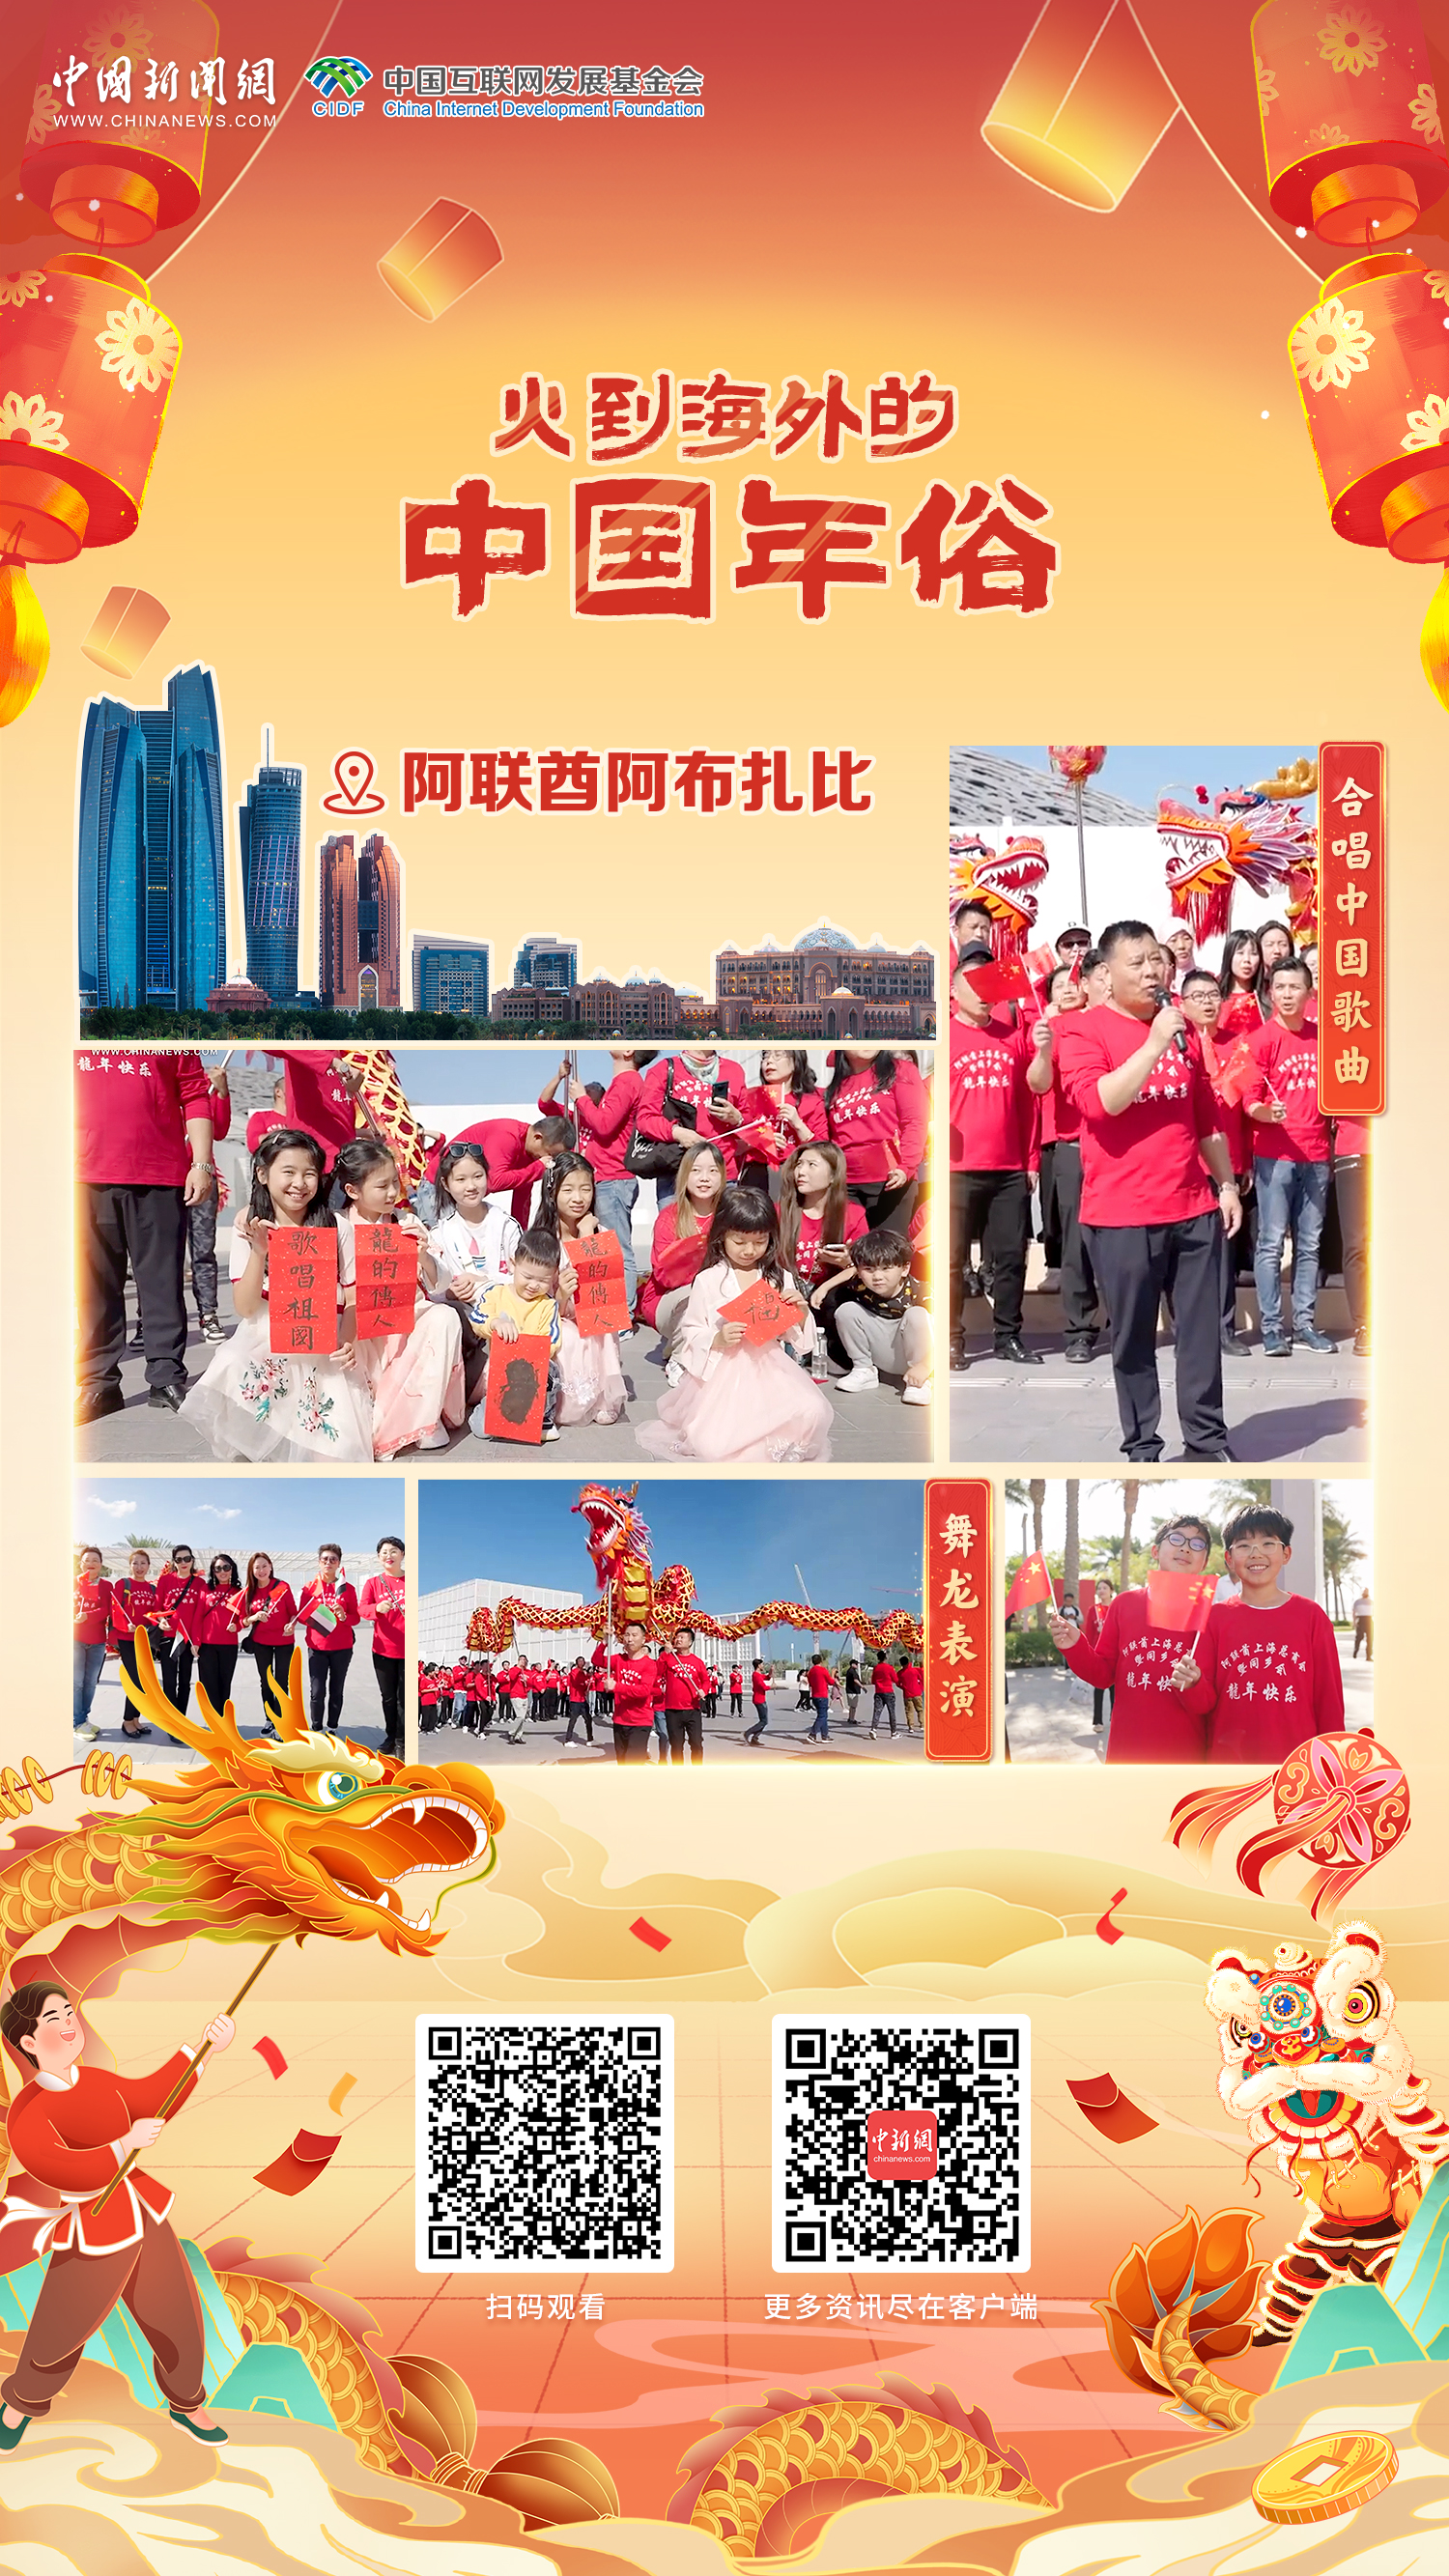 全球同庆中国年丨共庆新春佳节，华侨华人唱响“龙的传人”